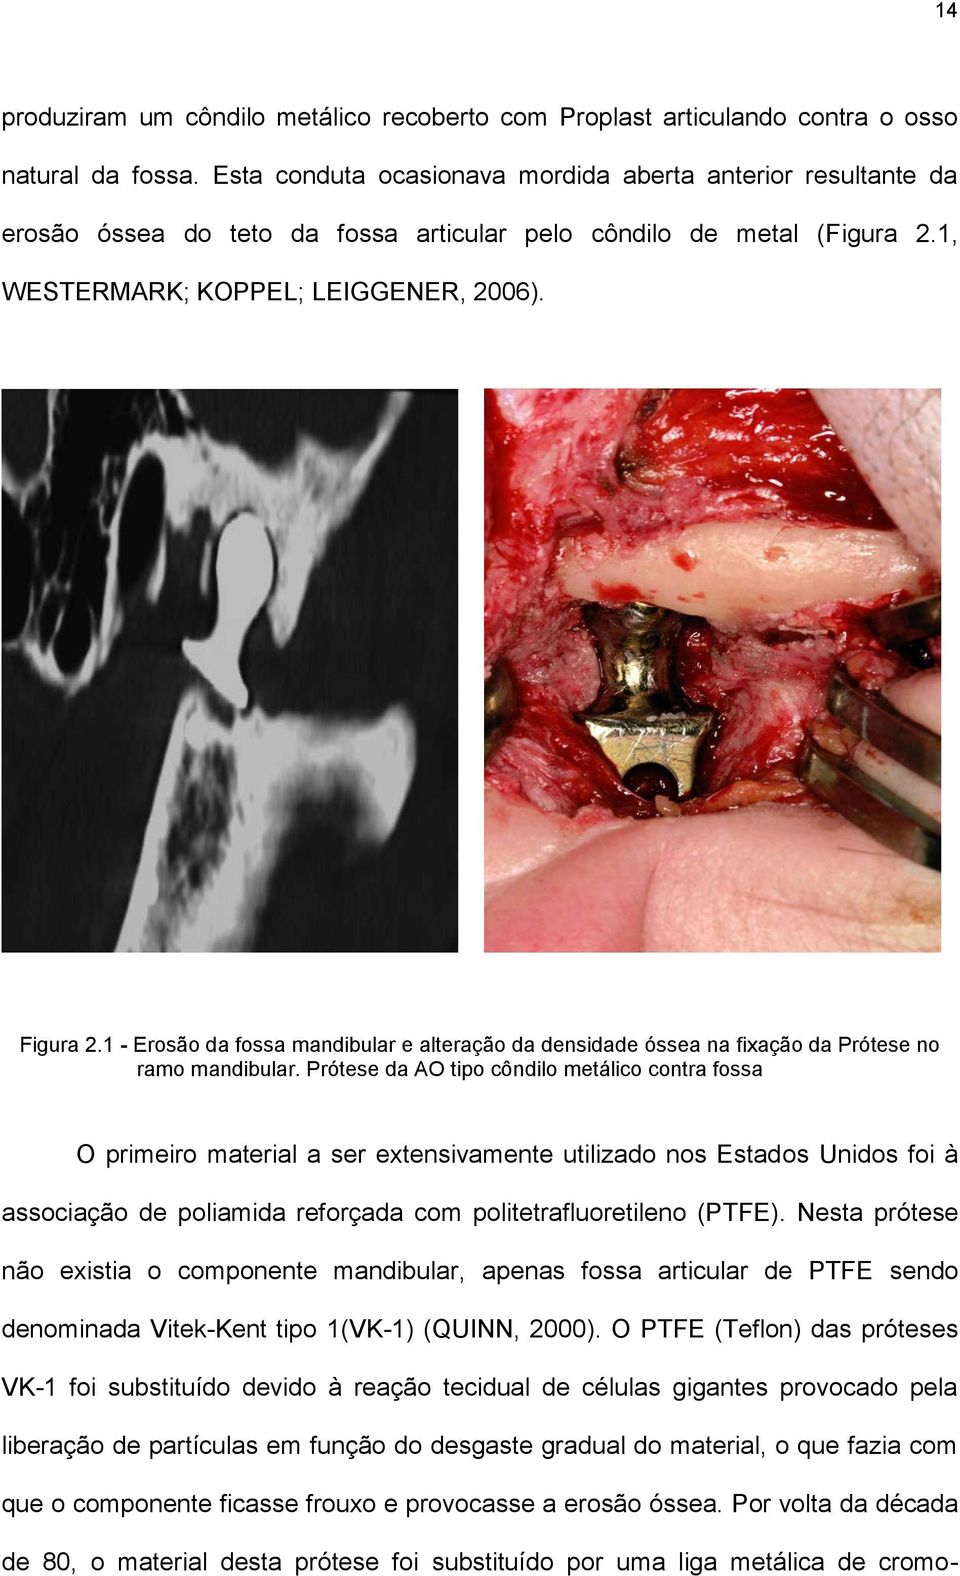 1 - Erosão da fossa mandibular e alteração da densidade óssea na fixação da Prótese no ramo mandibular.